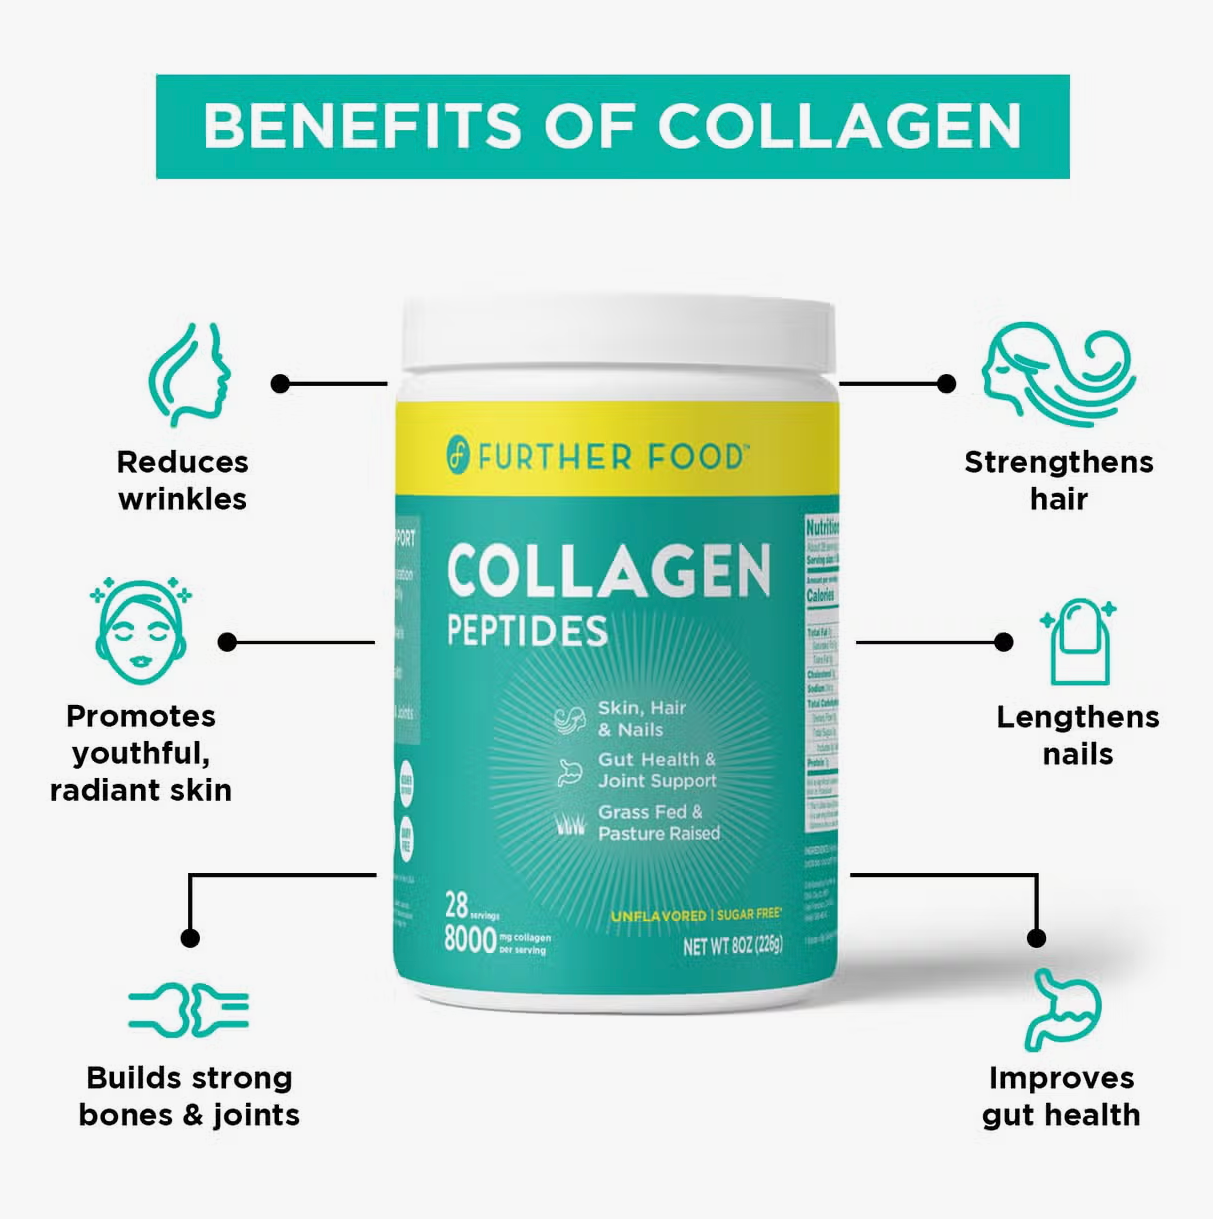 *Collagen Peptides